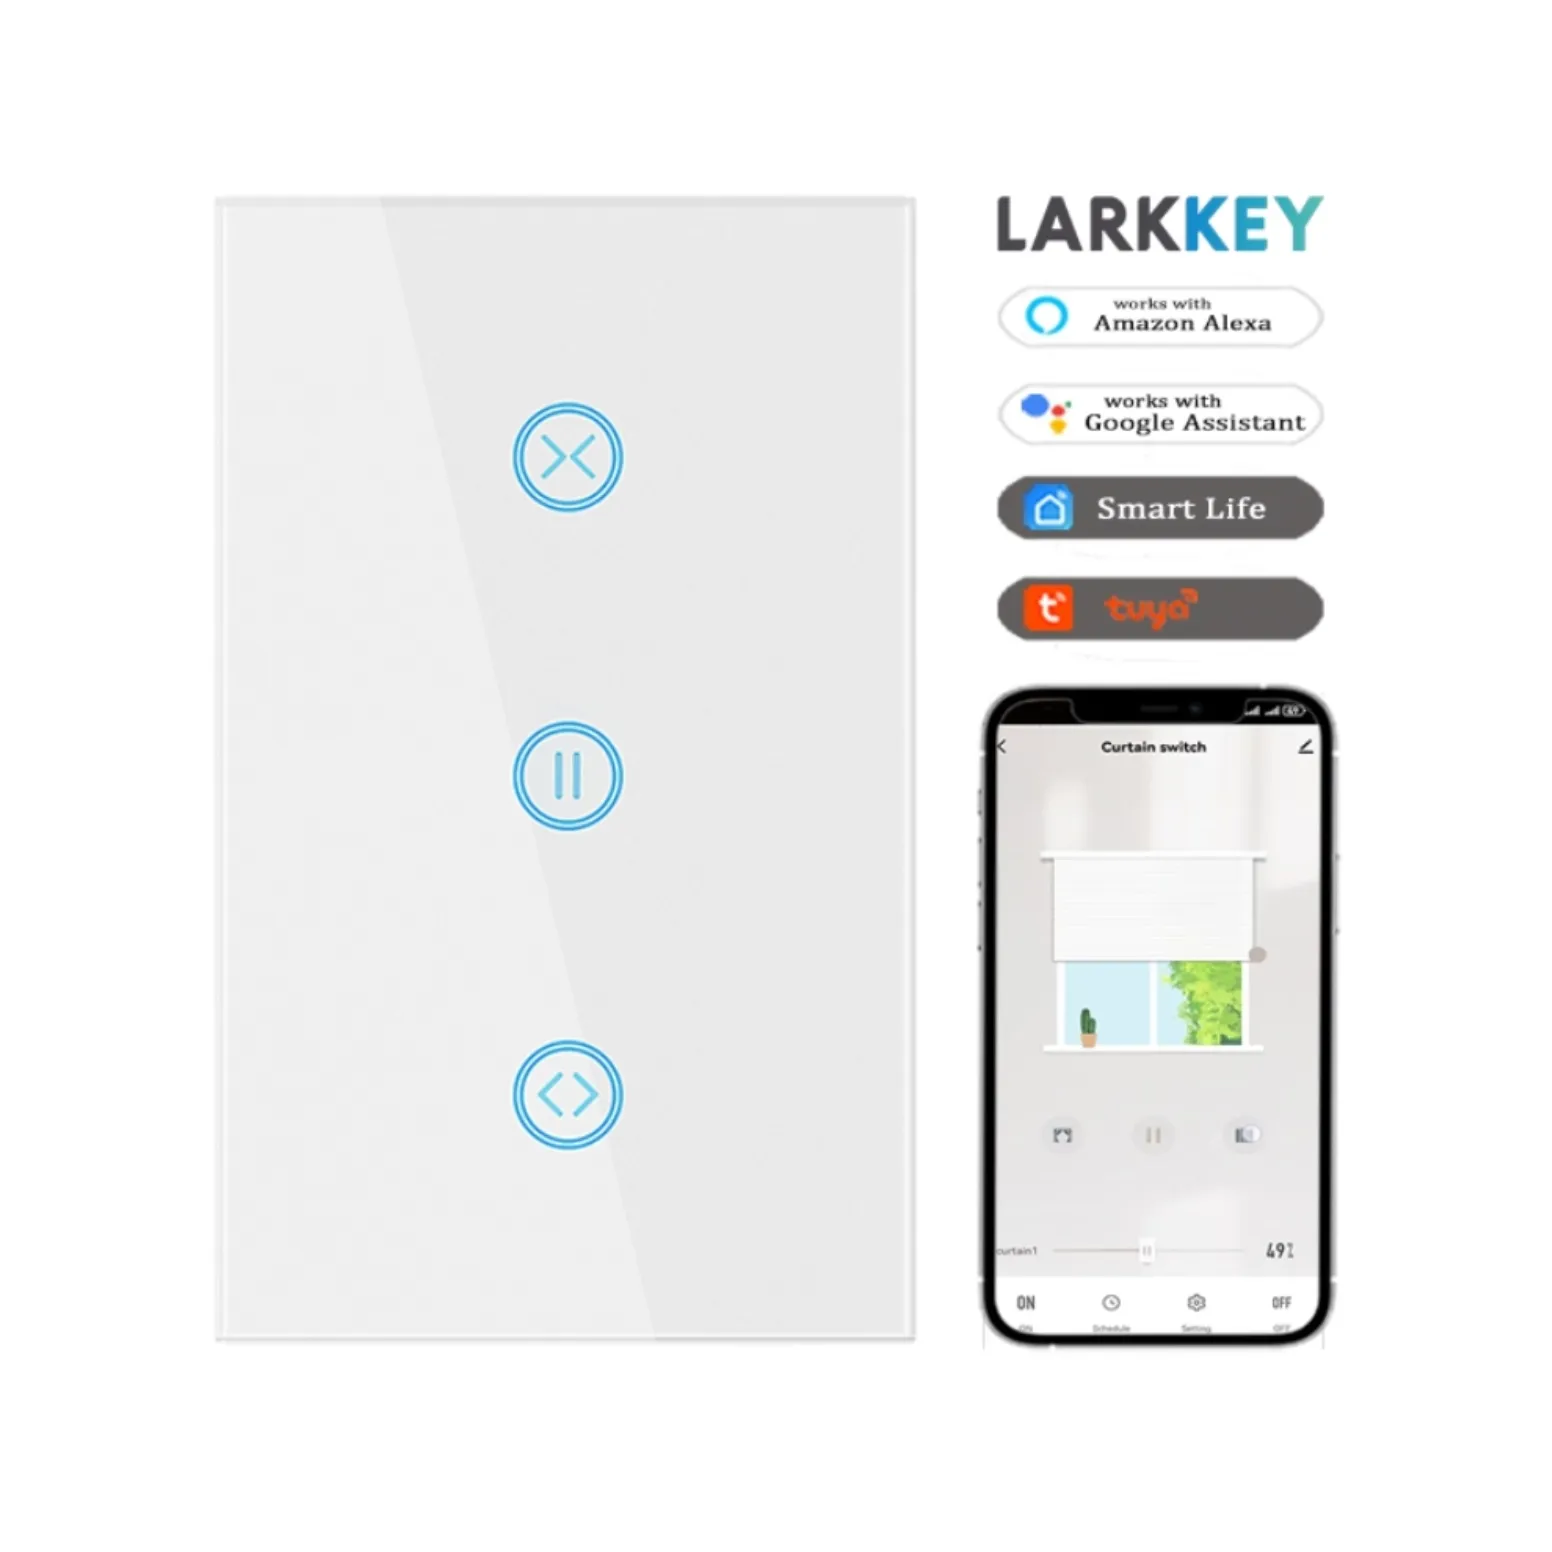 Larkkey tuya thông minh Rèm chuyển đổi Wifi chúng tôi tiêu chuẩn thông minh rèm cửa chuyển đổi với đồng hồ đếm ngược